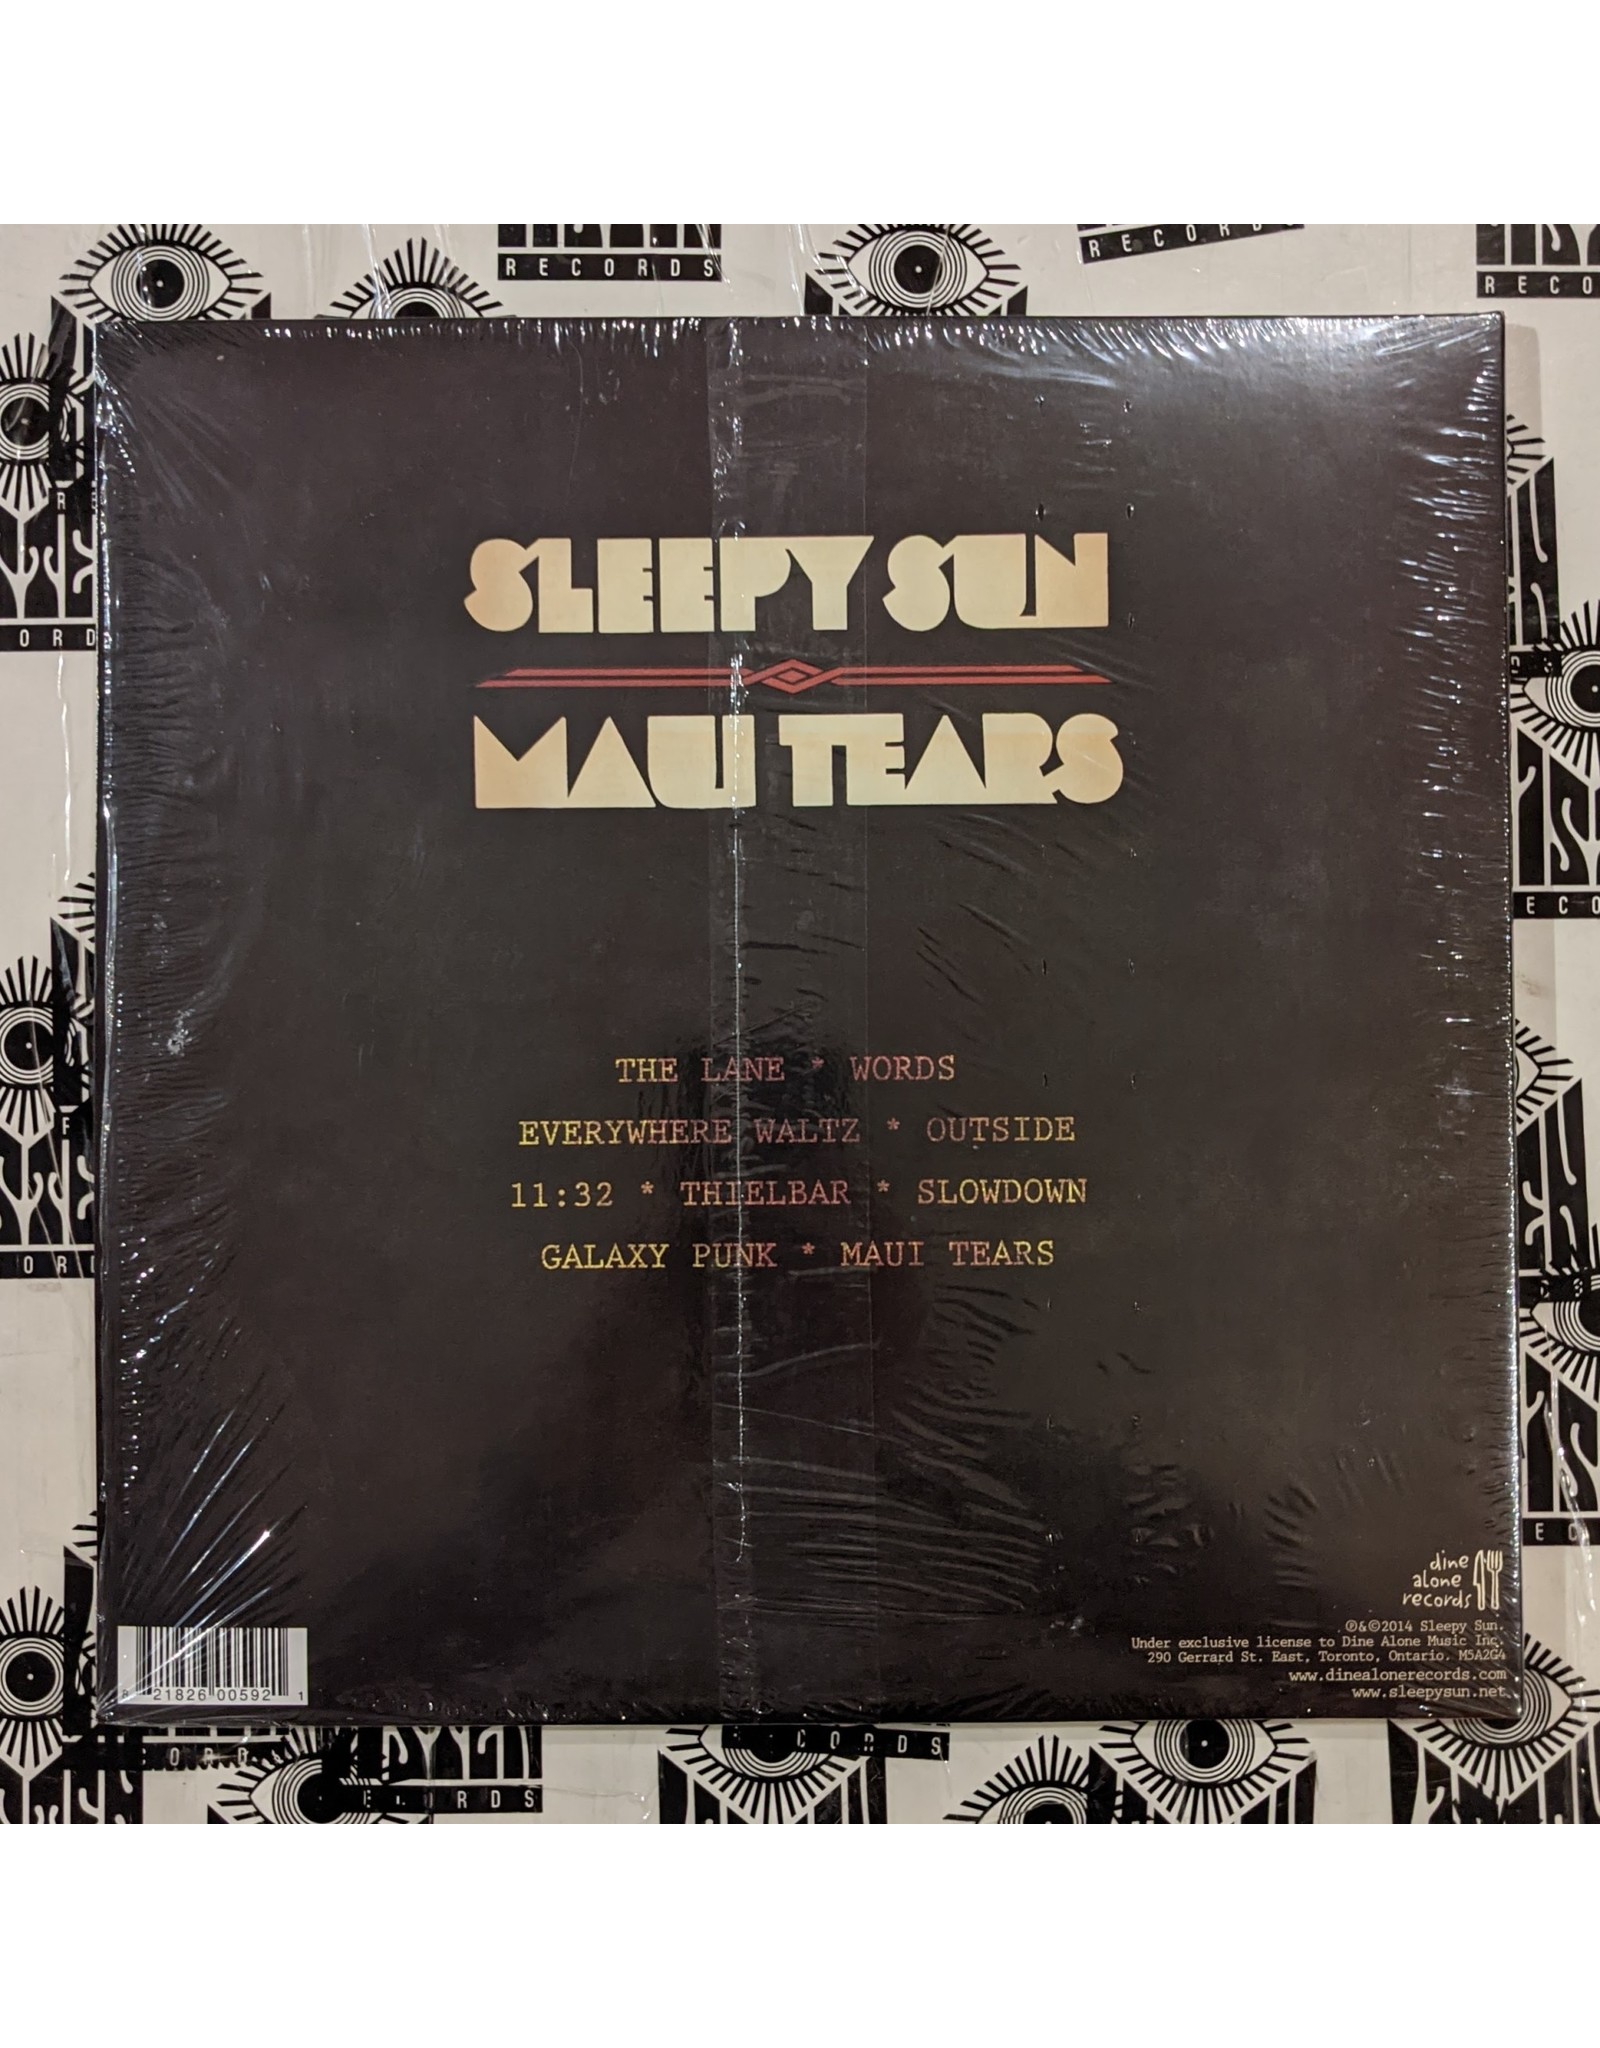 USED: Sleepy Sun: Maui Tears LP